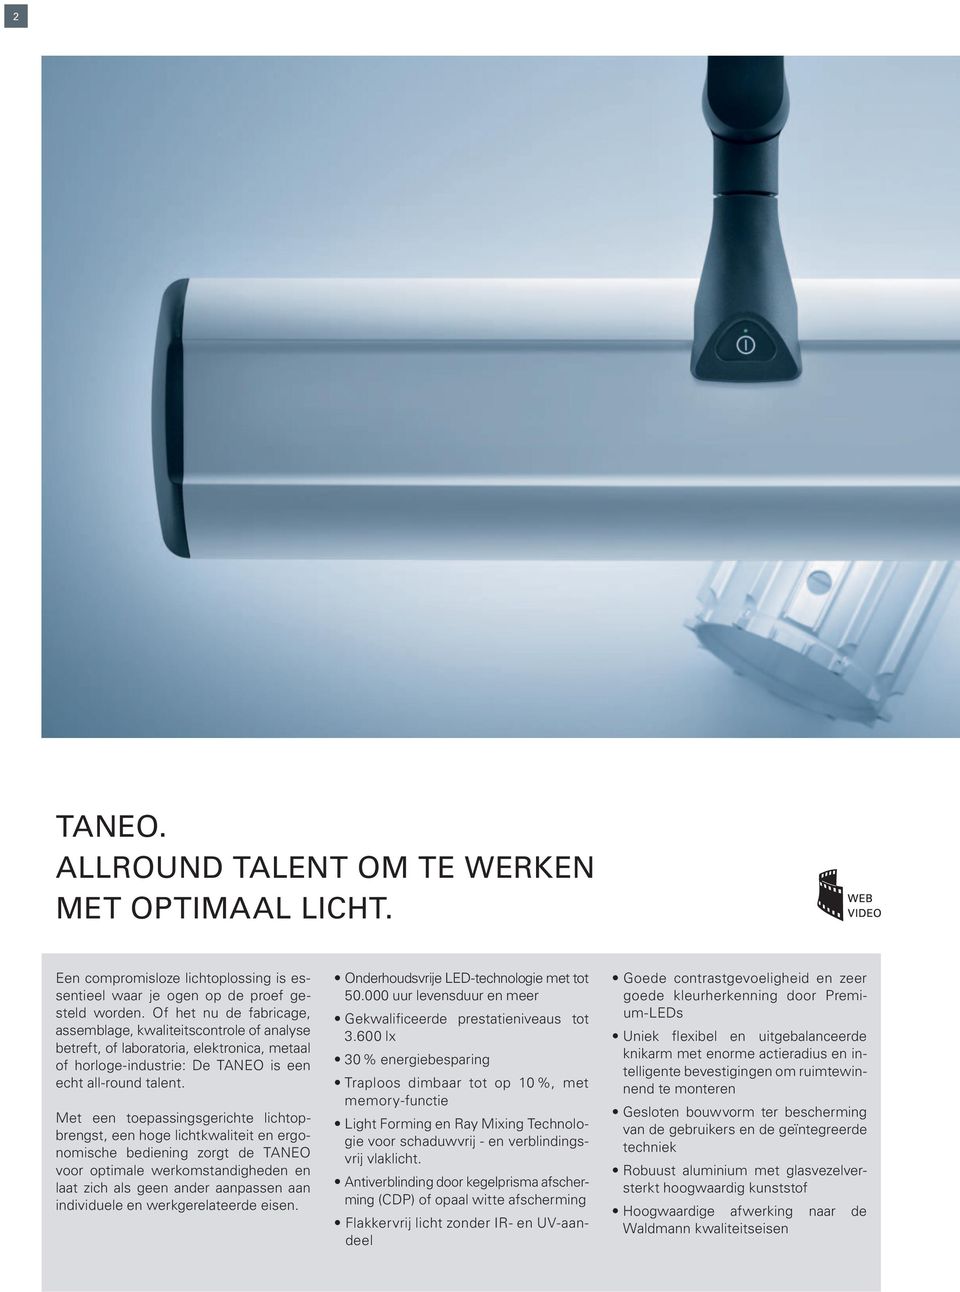 Met een toepassingsgerichte lichtopbrengst, een hoge lichtkwaliteit en ergonomische bediening zorgt de TANEO voor optimale werkomstandigheden en laat zich als geen ander aanpassen aan individuele en